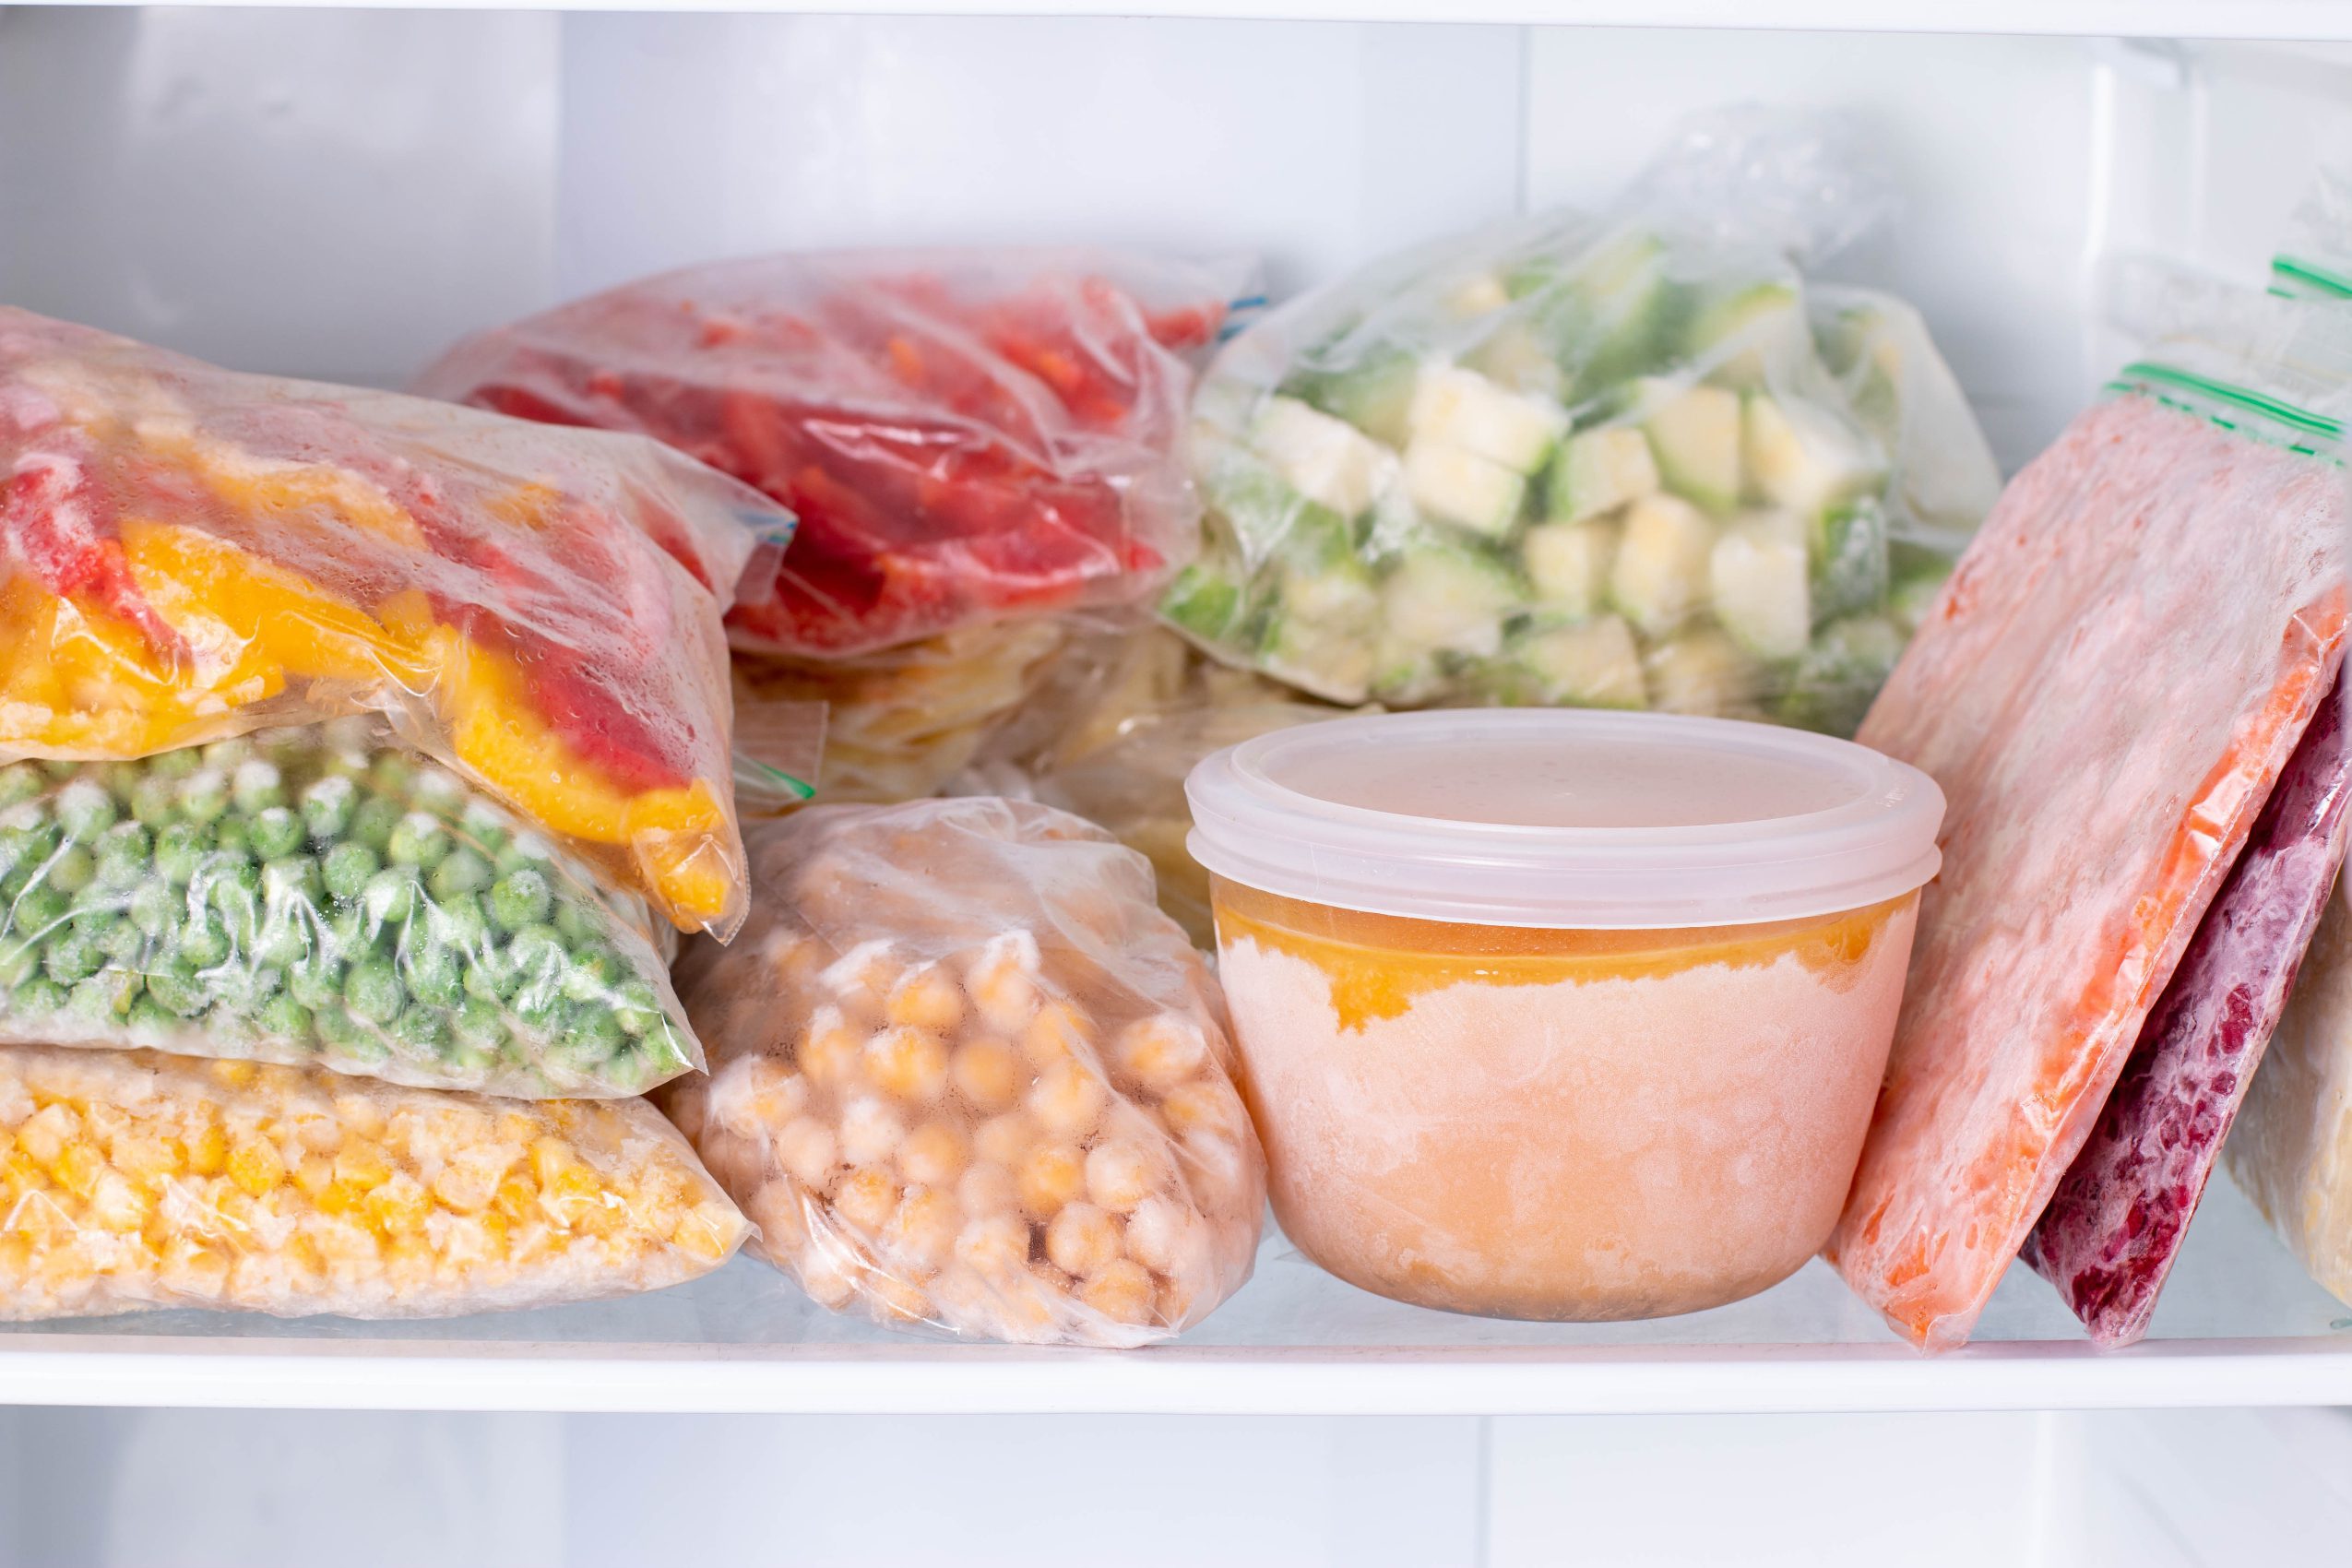 Frozen vegetables in freezer